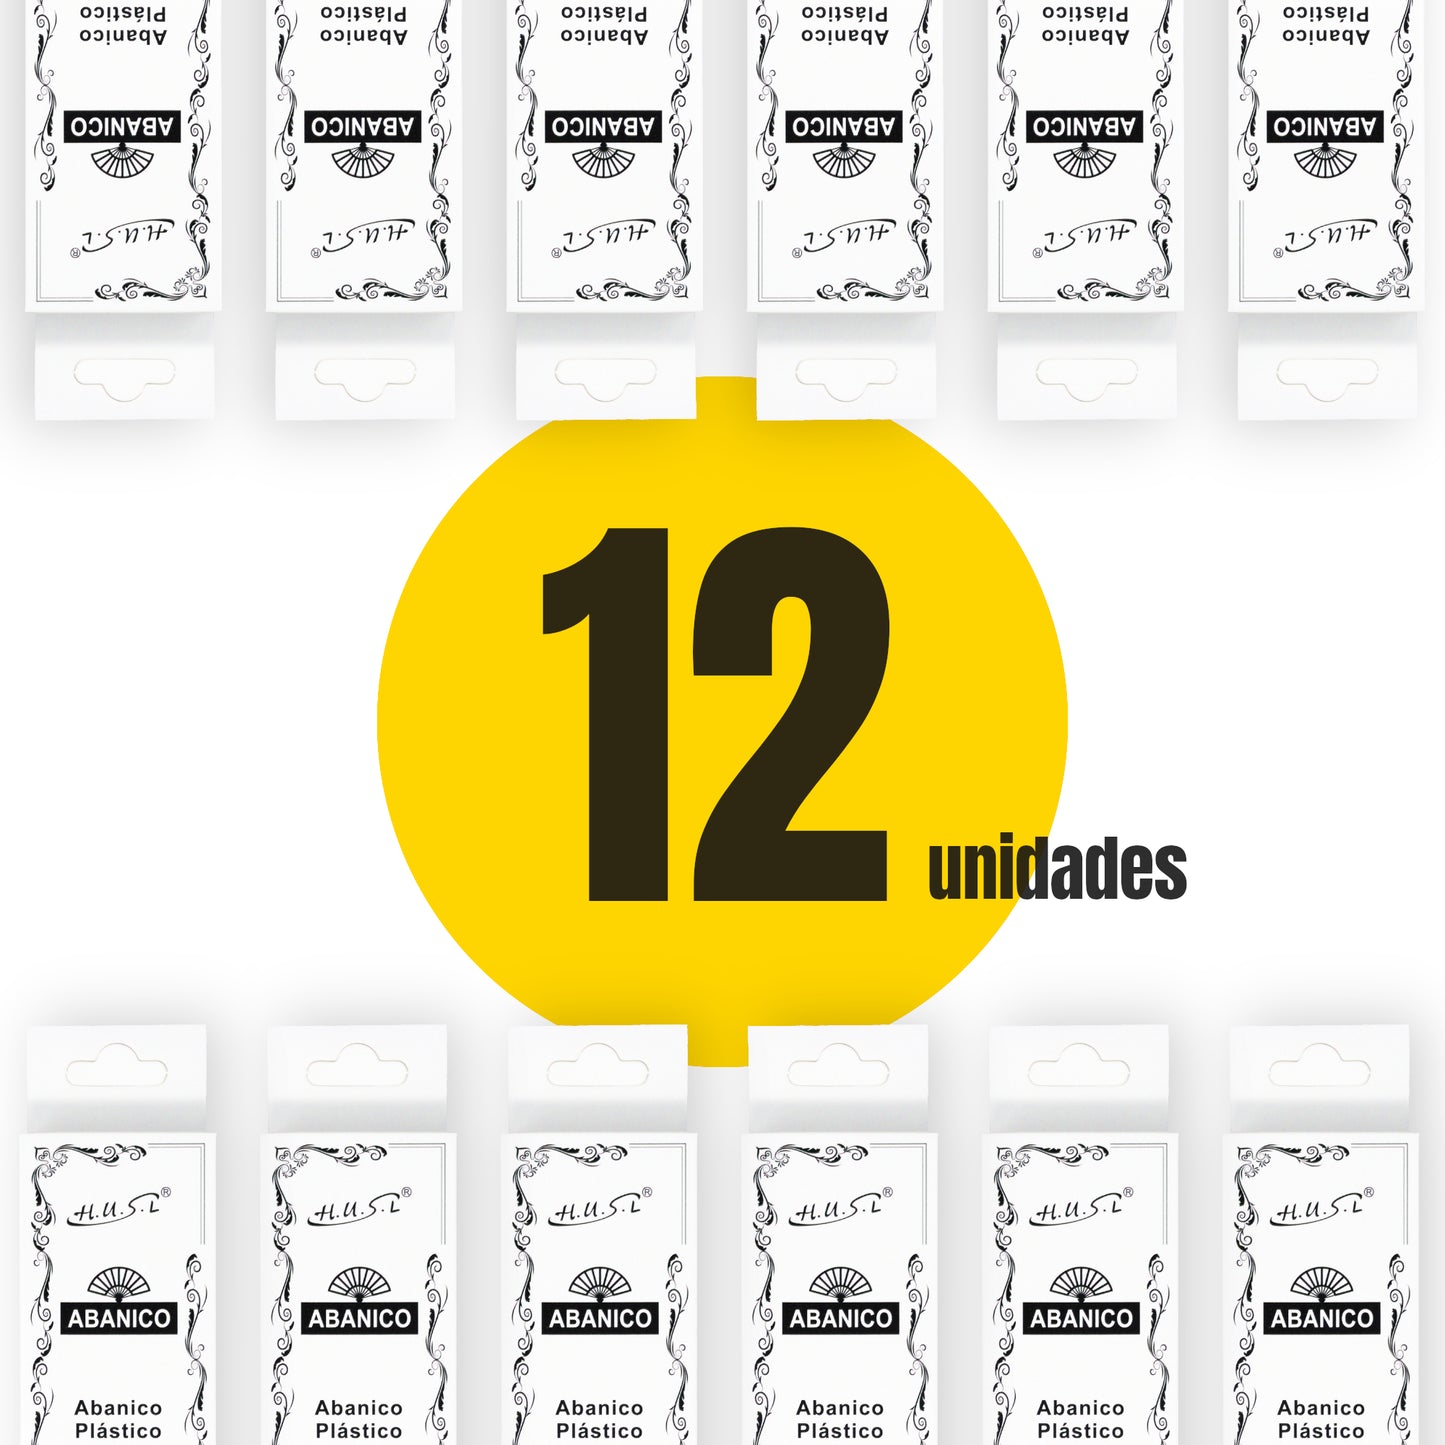 HOME UNIVERSAL Pack 12 Abanicos de Plástico con Empaquetado Individual para Regalar, Abanicos para Bodas, Comuniones, Fiestas y Eventos (Rosa)